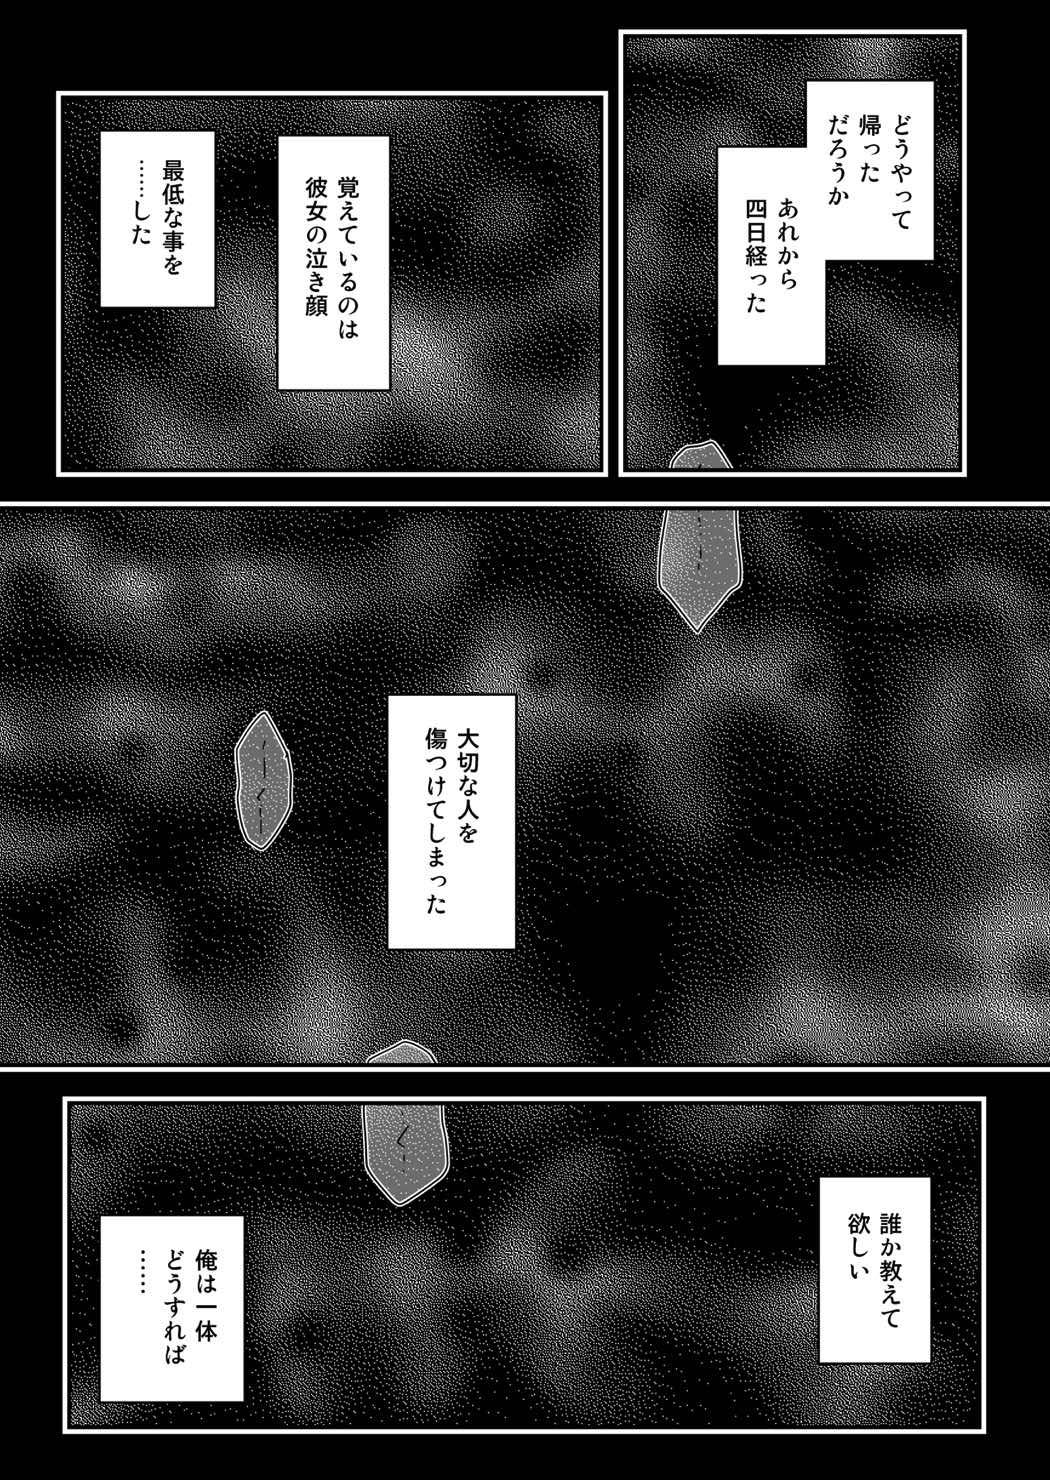 Porno ＊＊＊＊＊＊＊＊＊! 2 - Seitokai yakuindomo Peituda - Page 2